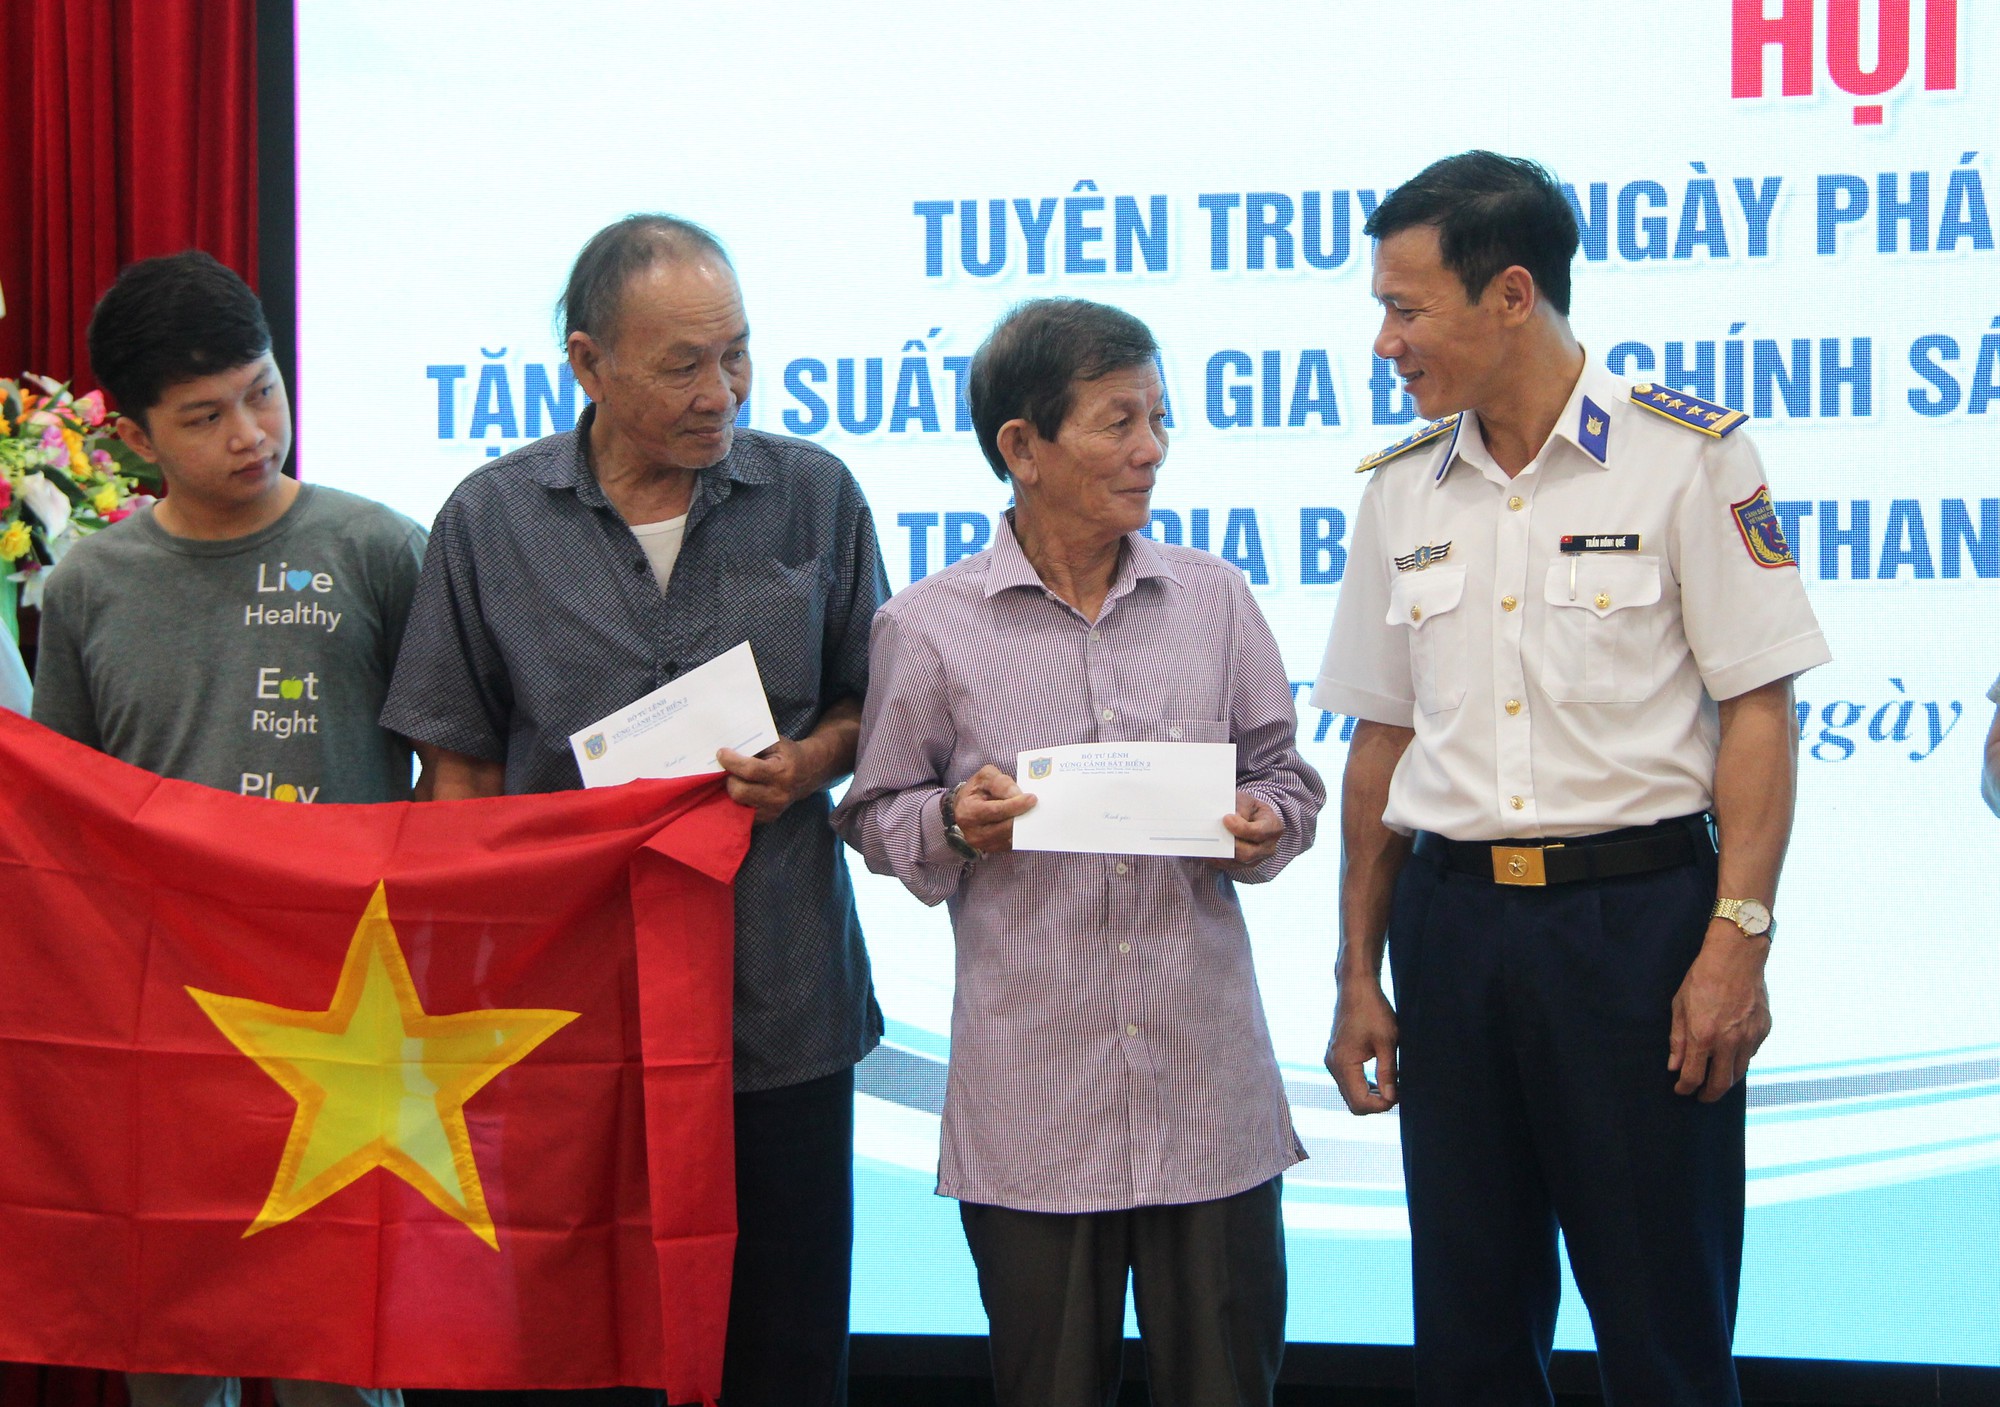 Bộ Tư lệnh Vùng Cảnh sát biển 2 đến với ngư dân Đà Nẵng